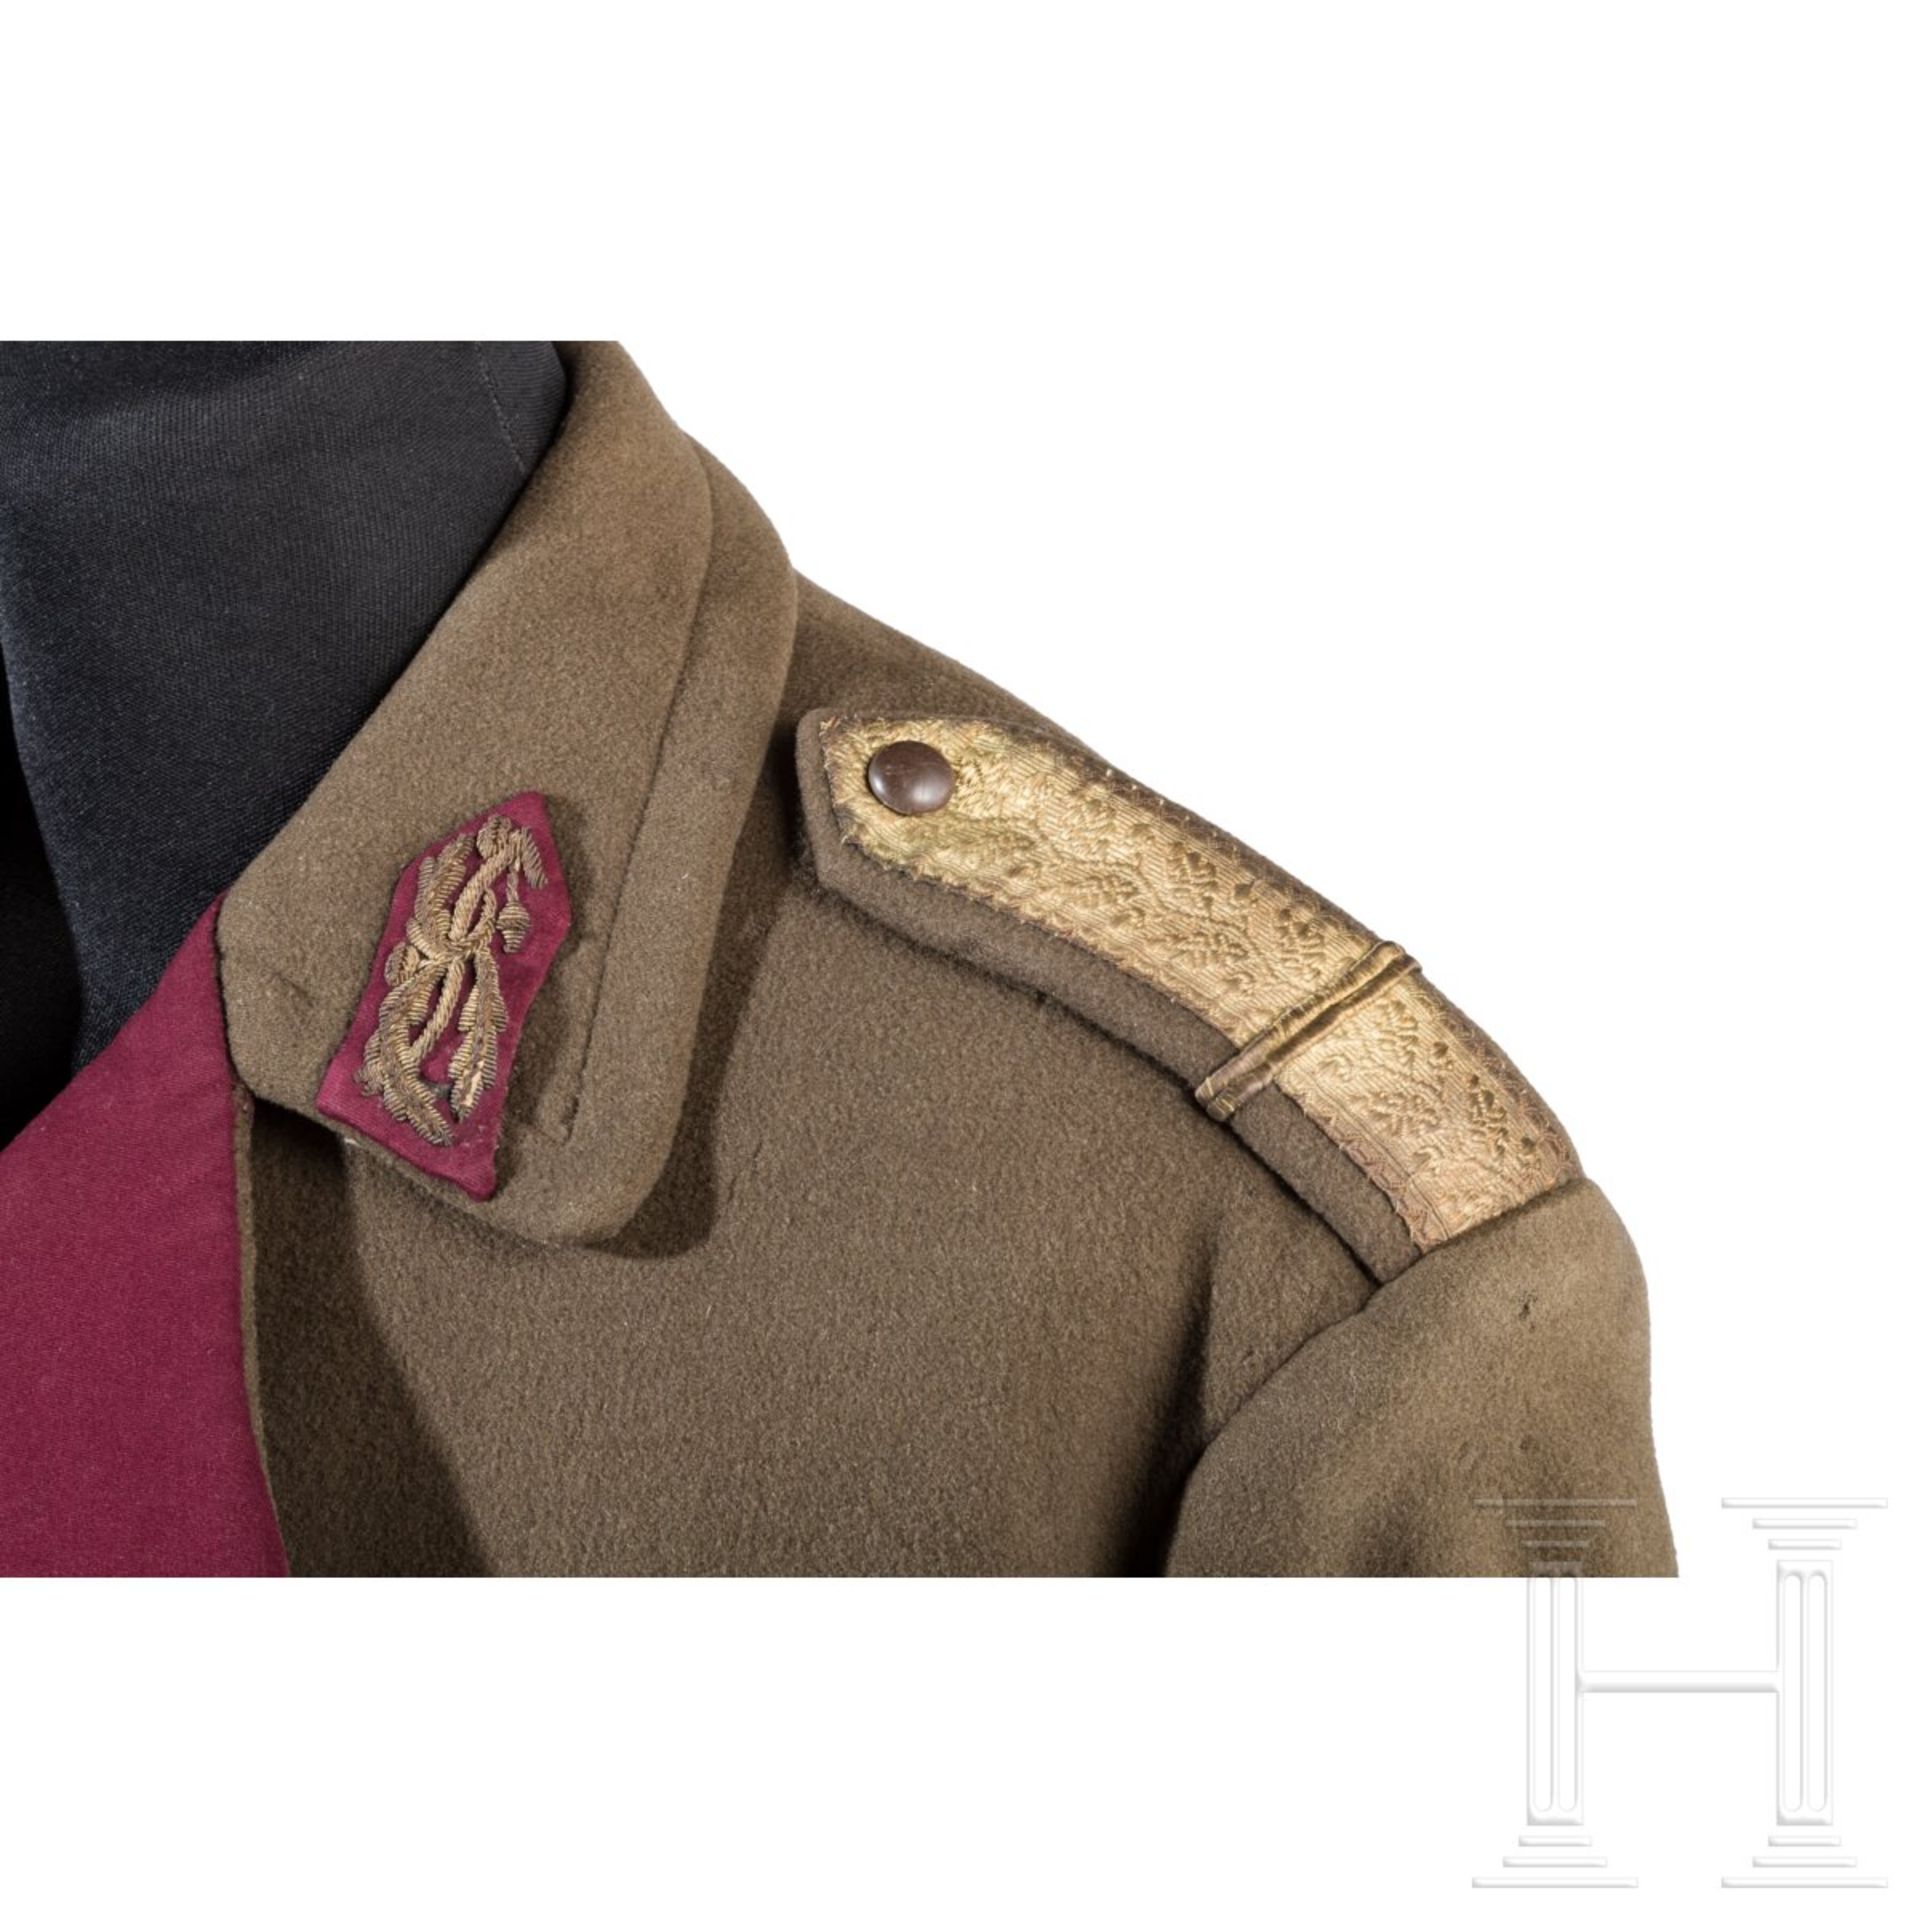 Mantel des Brigadegenerals und Ritterkreuzträgers Radu Korne - Bild 3 aus 10